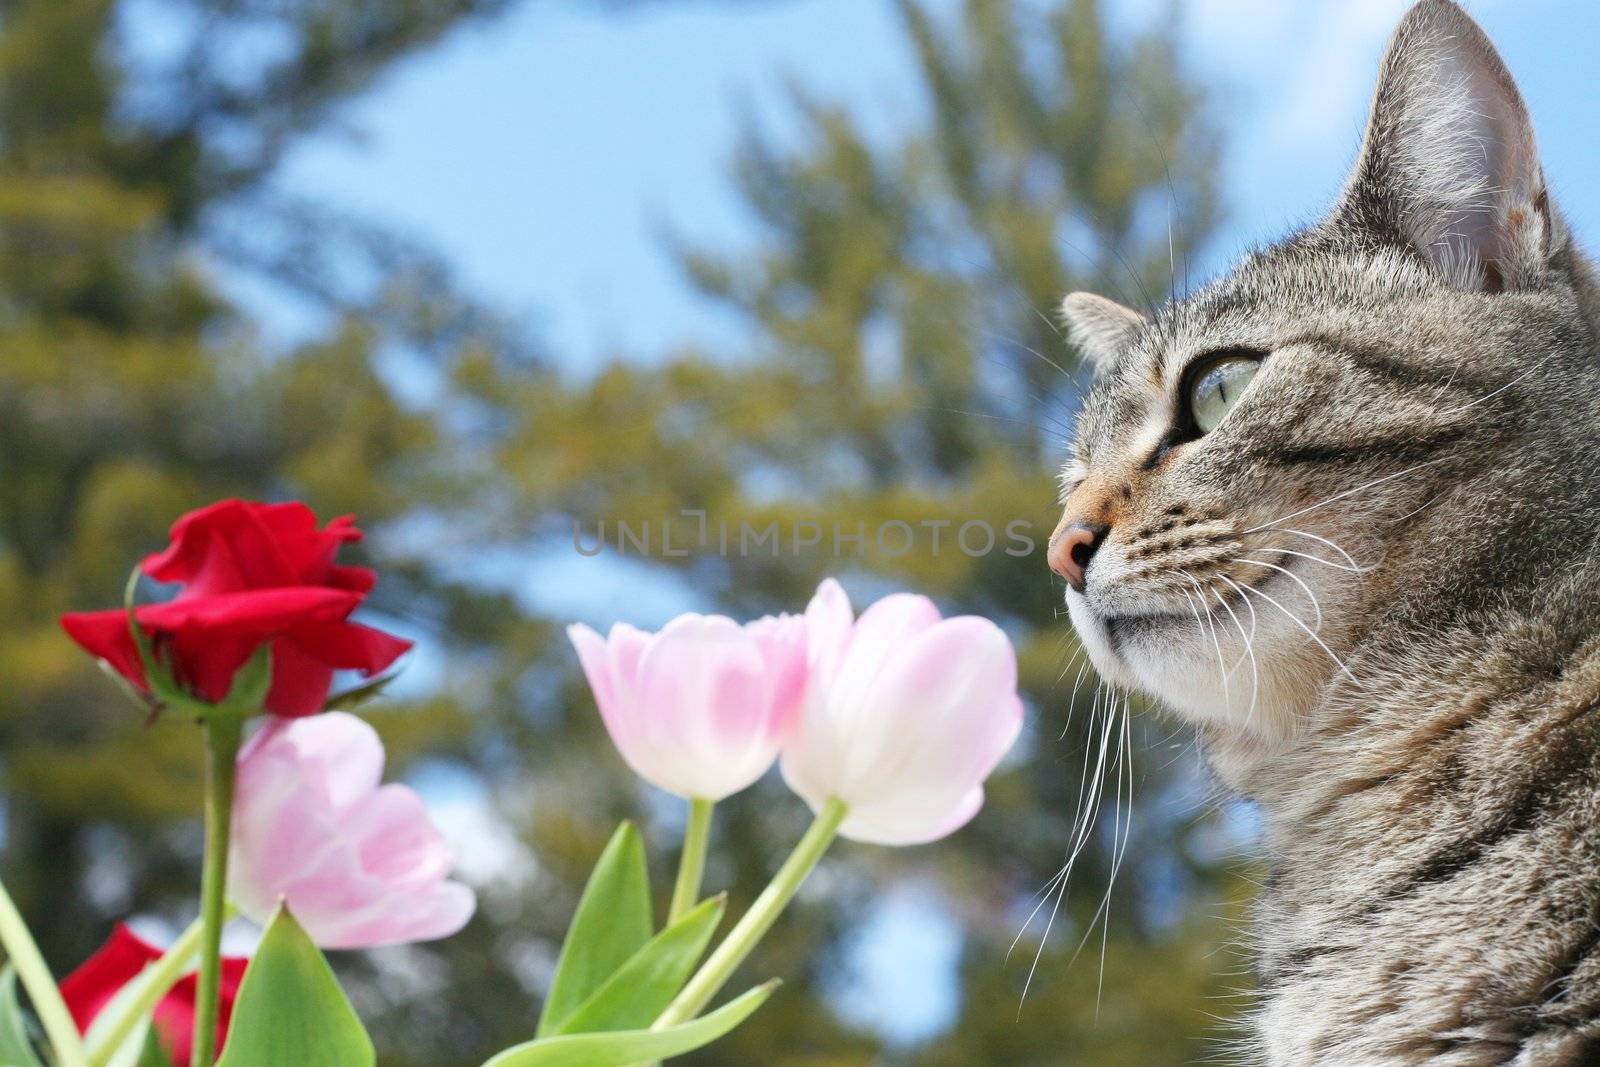 Kitty in the flower garden in spring by jarenwicklund